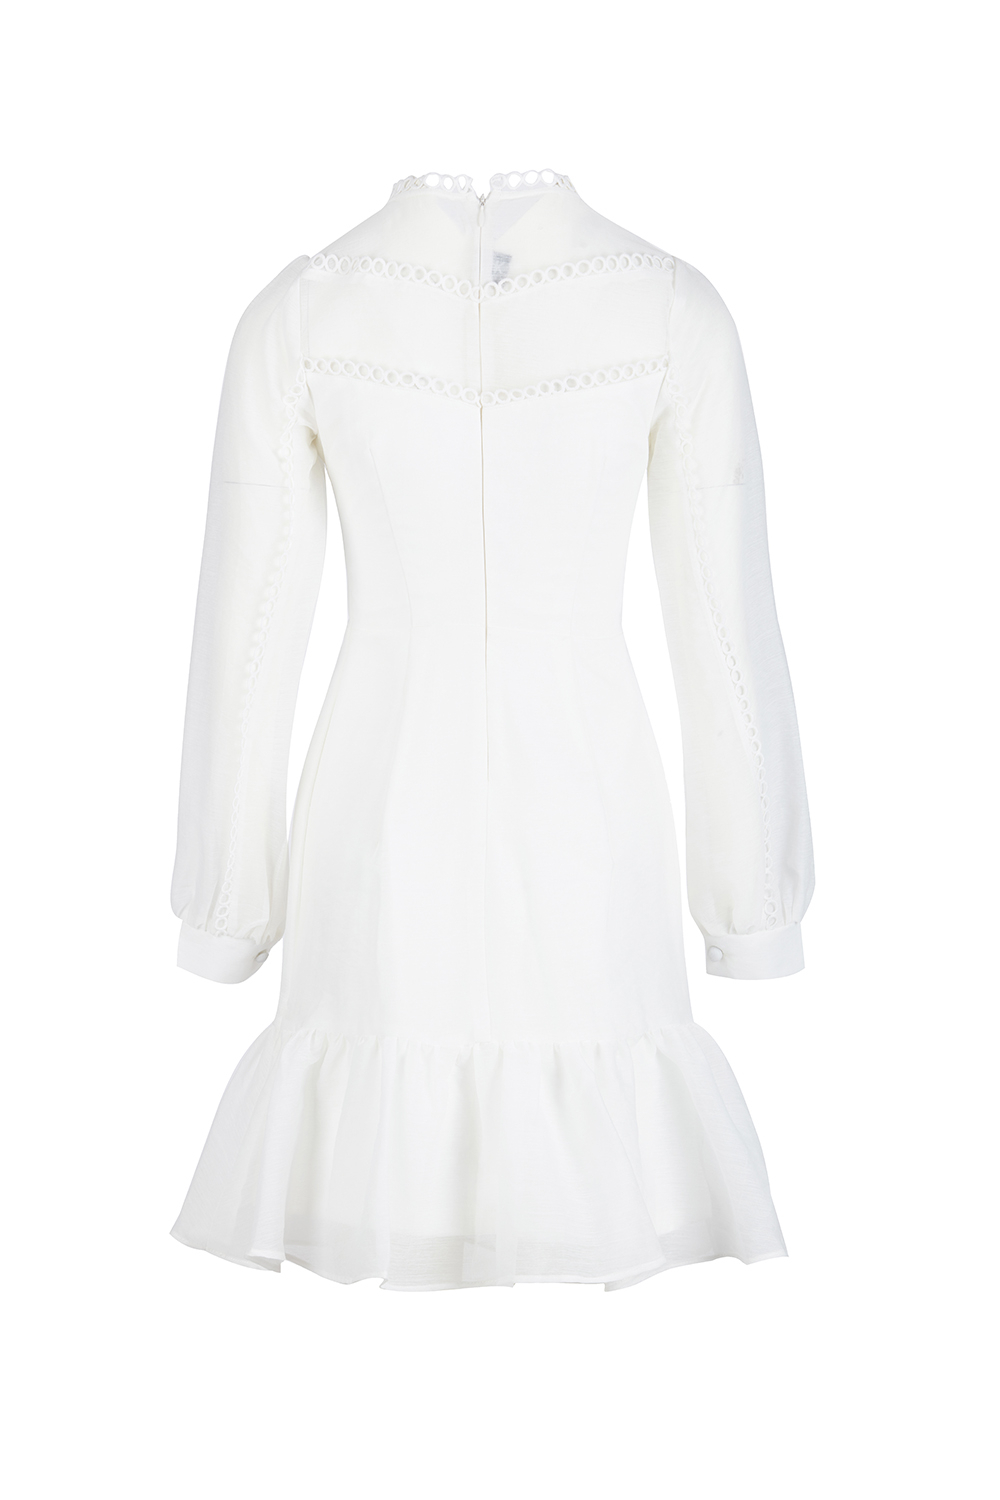 Đầm voan trắng đuôi cá tay dài HL15-31 | Thời trang công sở K&K ...